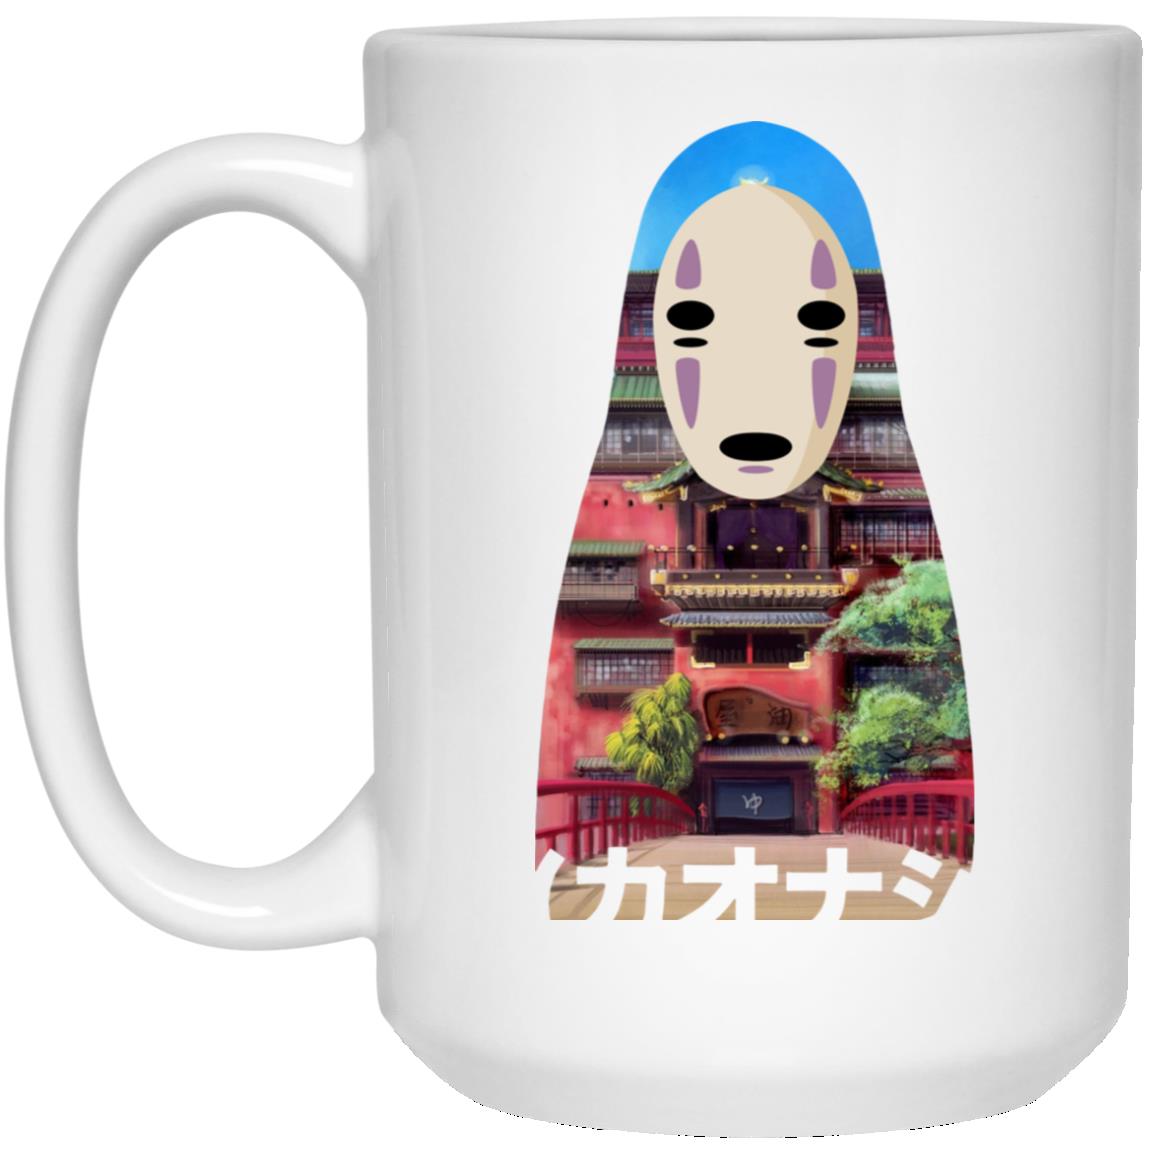 Spirited Away Kaonashi Cutout Colorful Mug